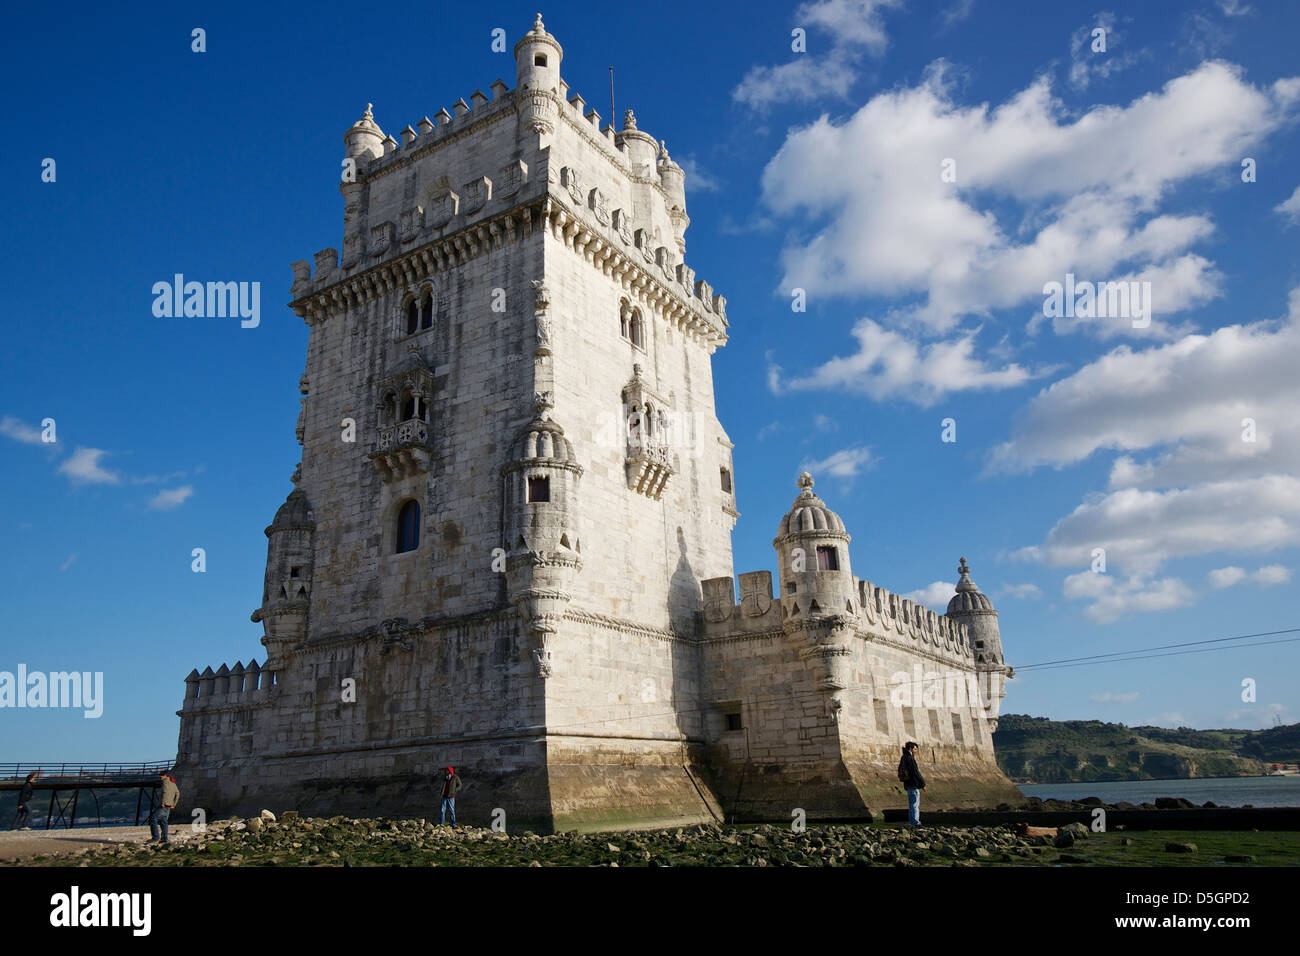 La Torre de Belem (Balem Tower), est l'un des sites les plus célèbres de Lisbonne. Banque D'Images